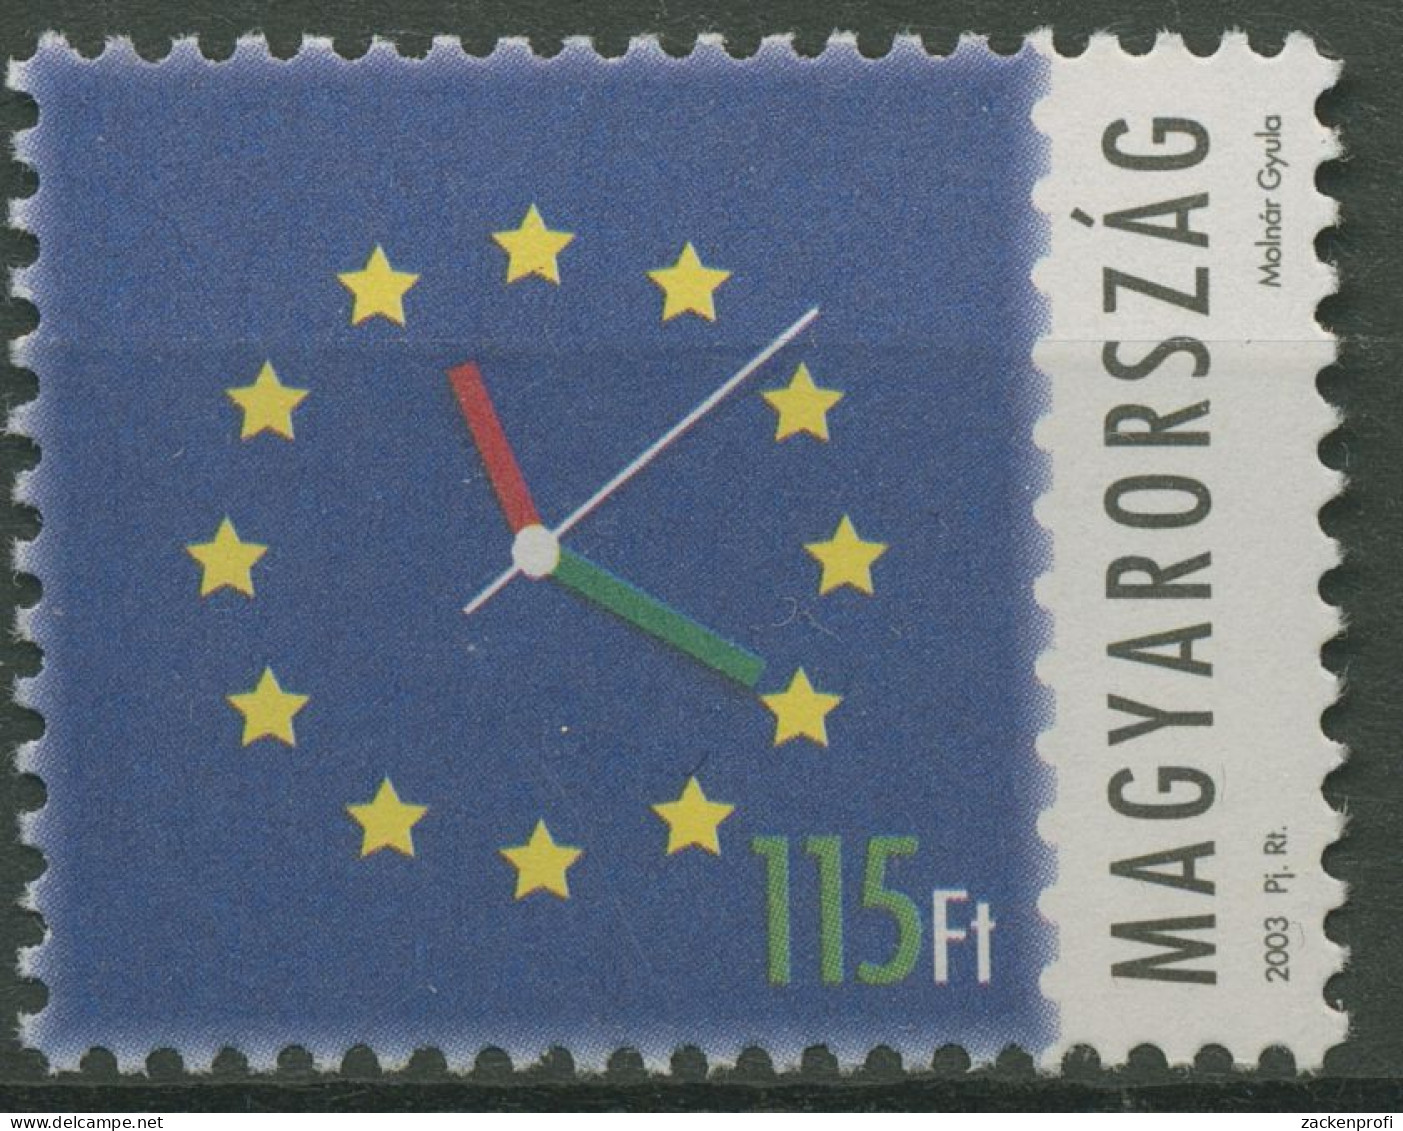 Ungarn 2003 Aufnahme In Die Europäische Union Ziffernblatt 4808 Postfrisch - Unused Stamps